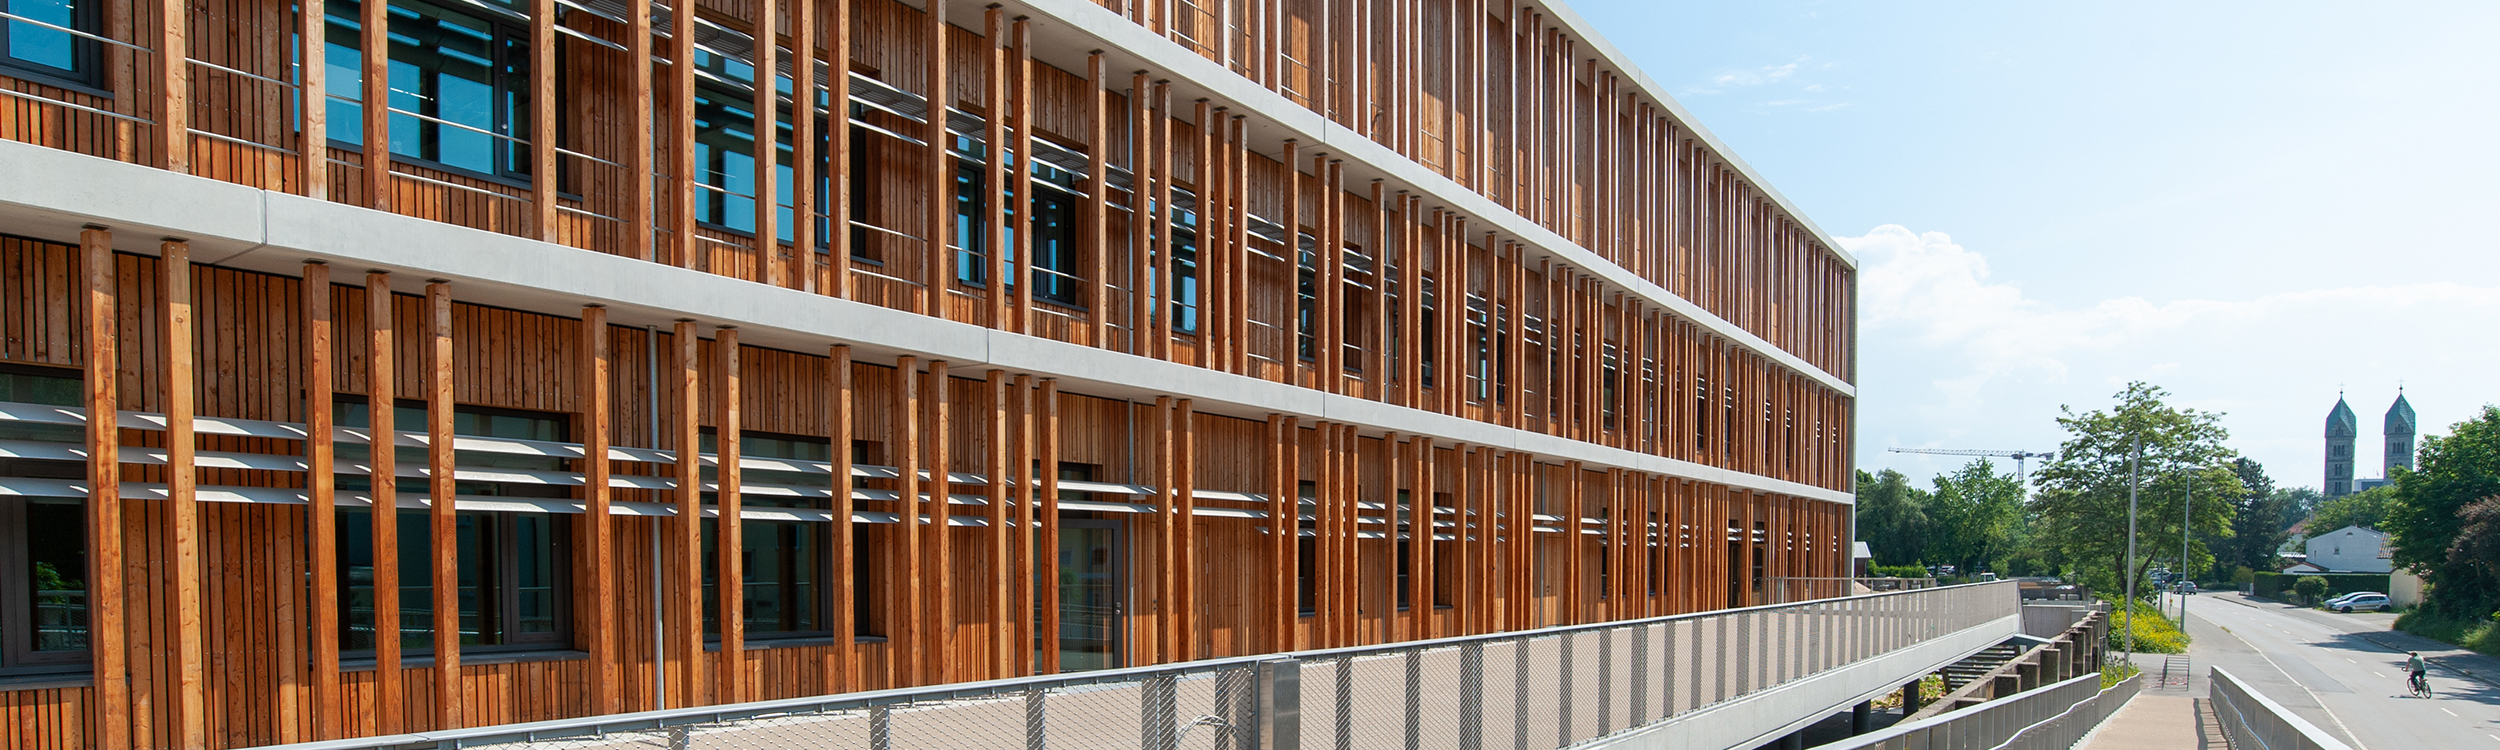 Modernes nachhaltiges Gebäude mit Holzfassade auf dem Campus Straubing